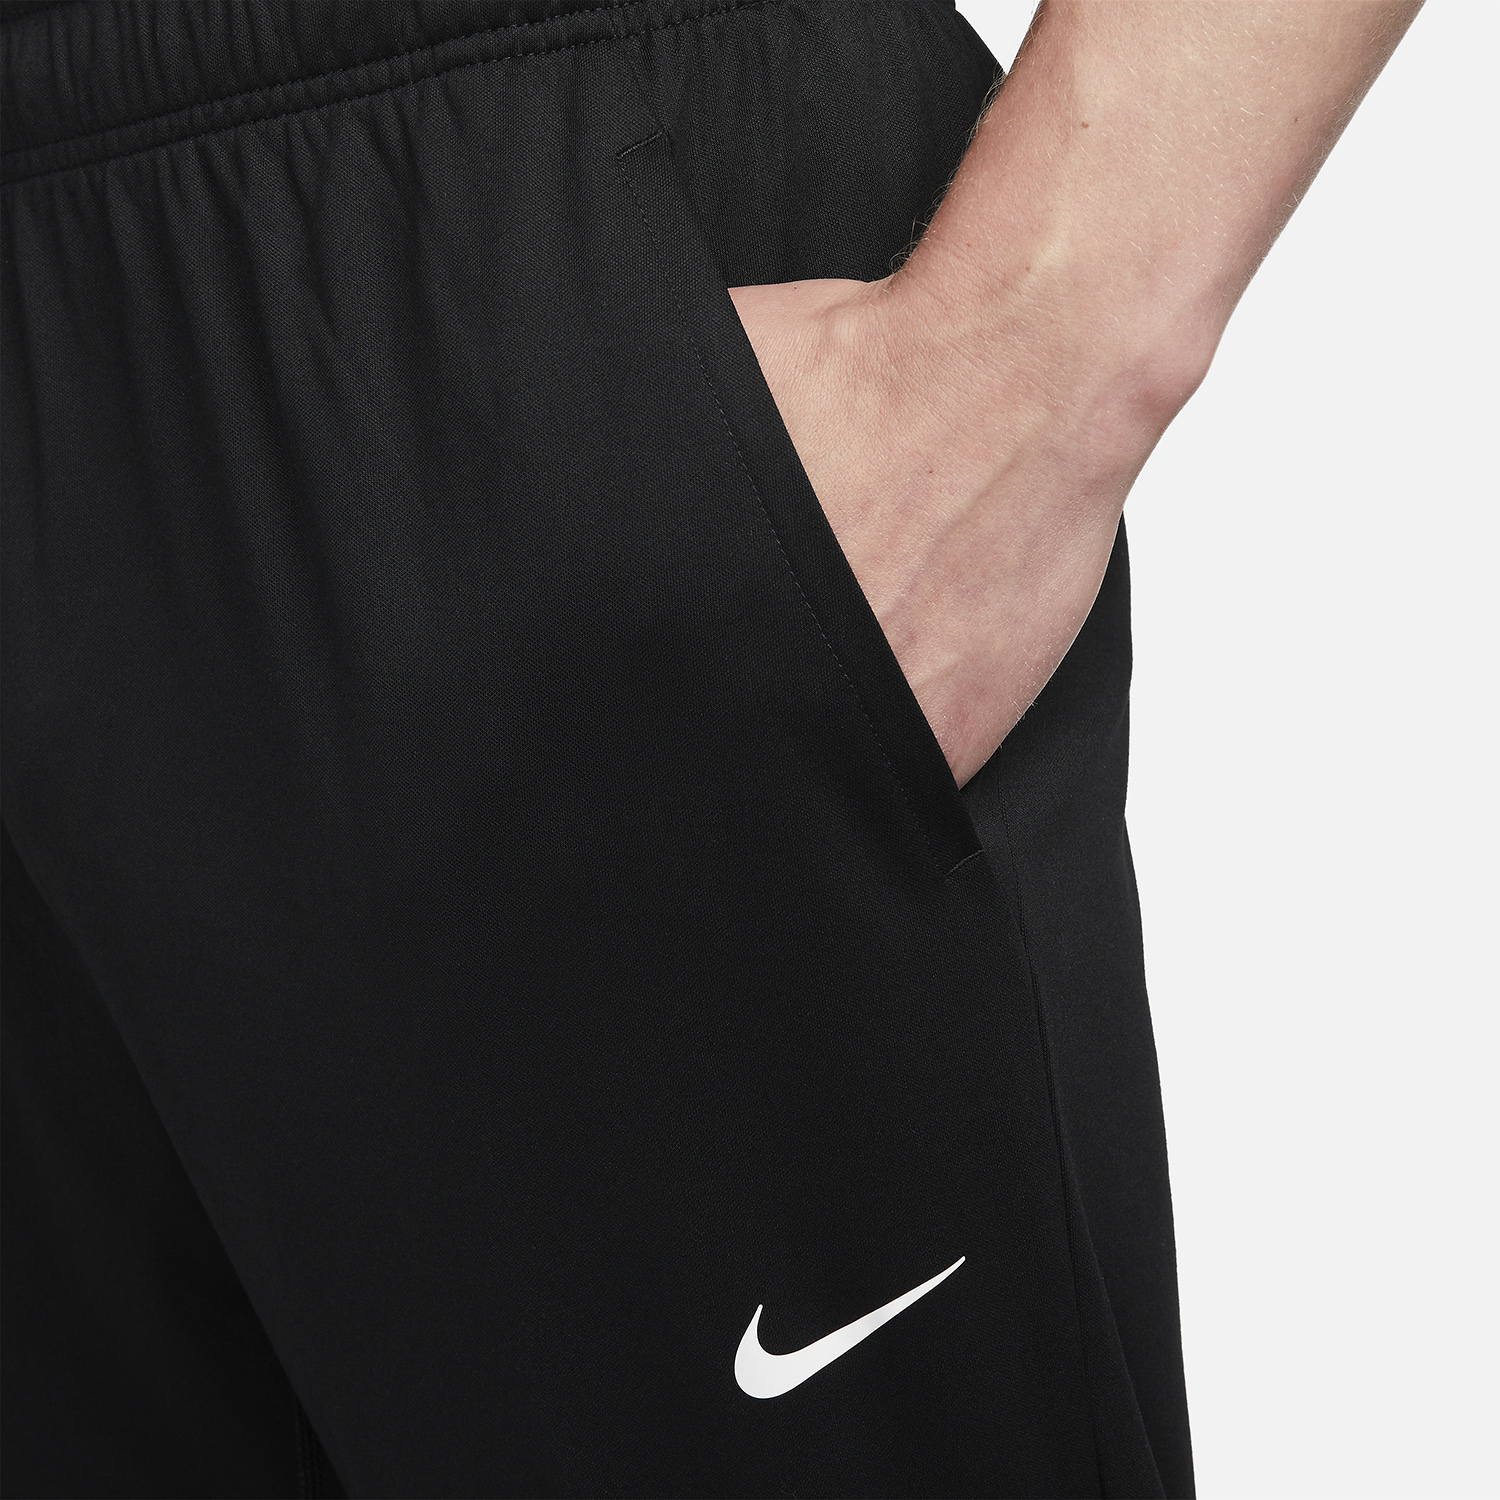 Nike Dri-FIT Totality Men's Training Pants - Black/White